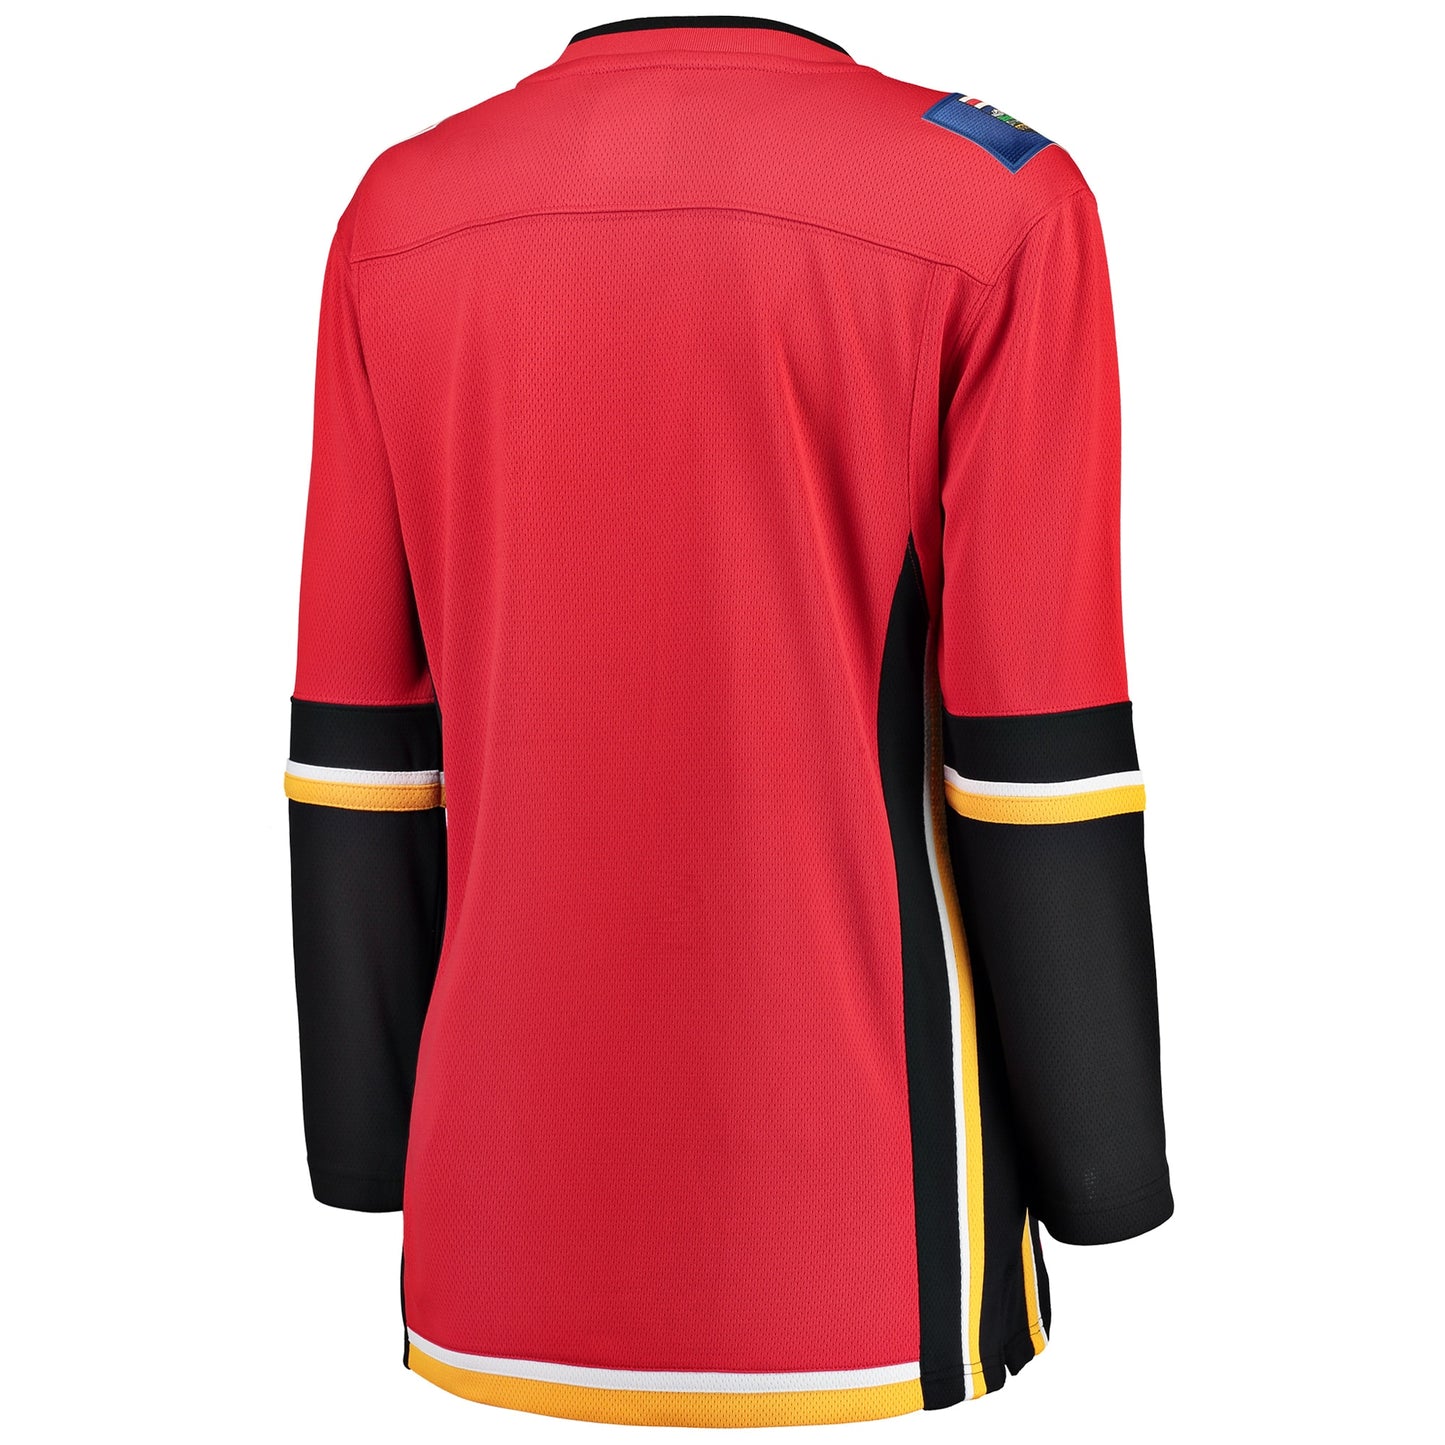 Calgary Flames Fanatics Branded Women's Premier Breakaway Alternate Jersey - Red/Black